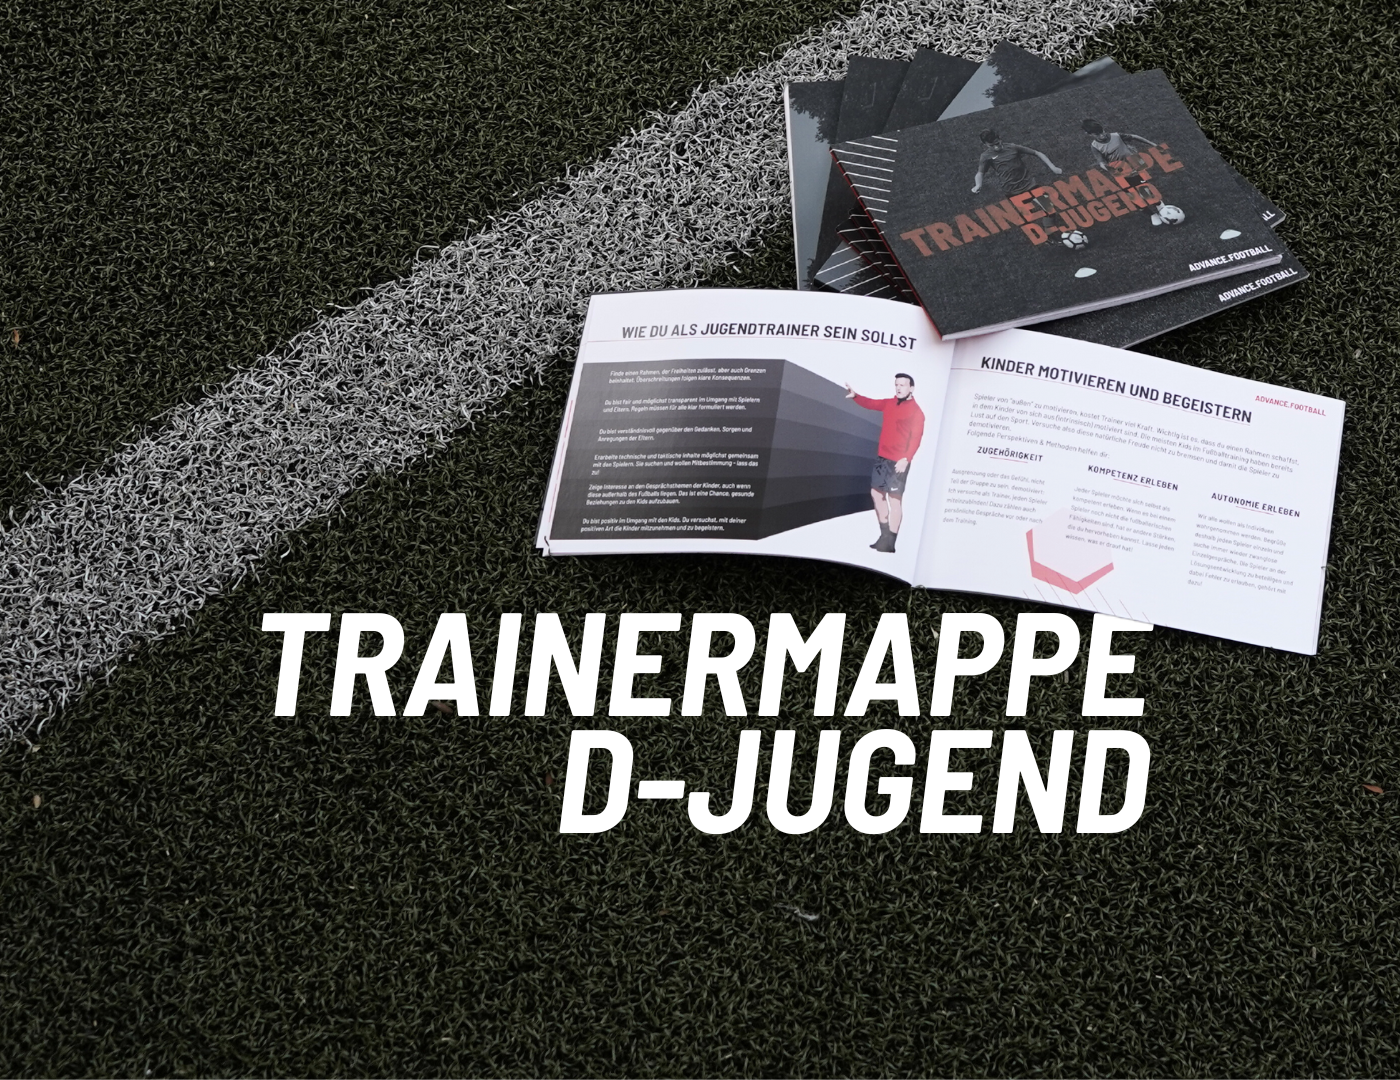 Trainermappe D-Jugend ist ein Handbuch für Jugendtrainer im Jugendfußball. 